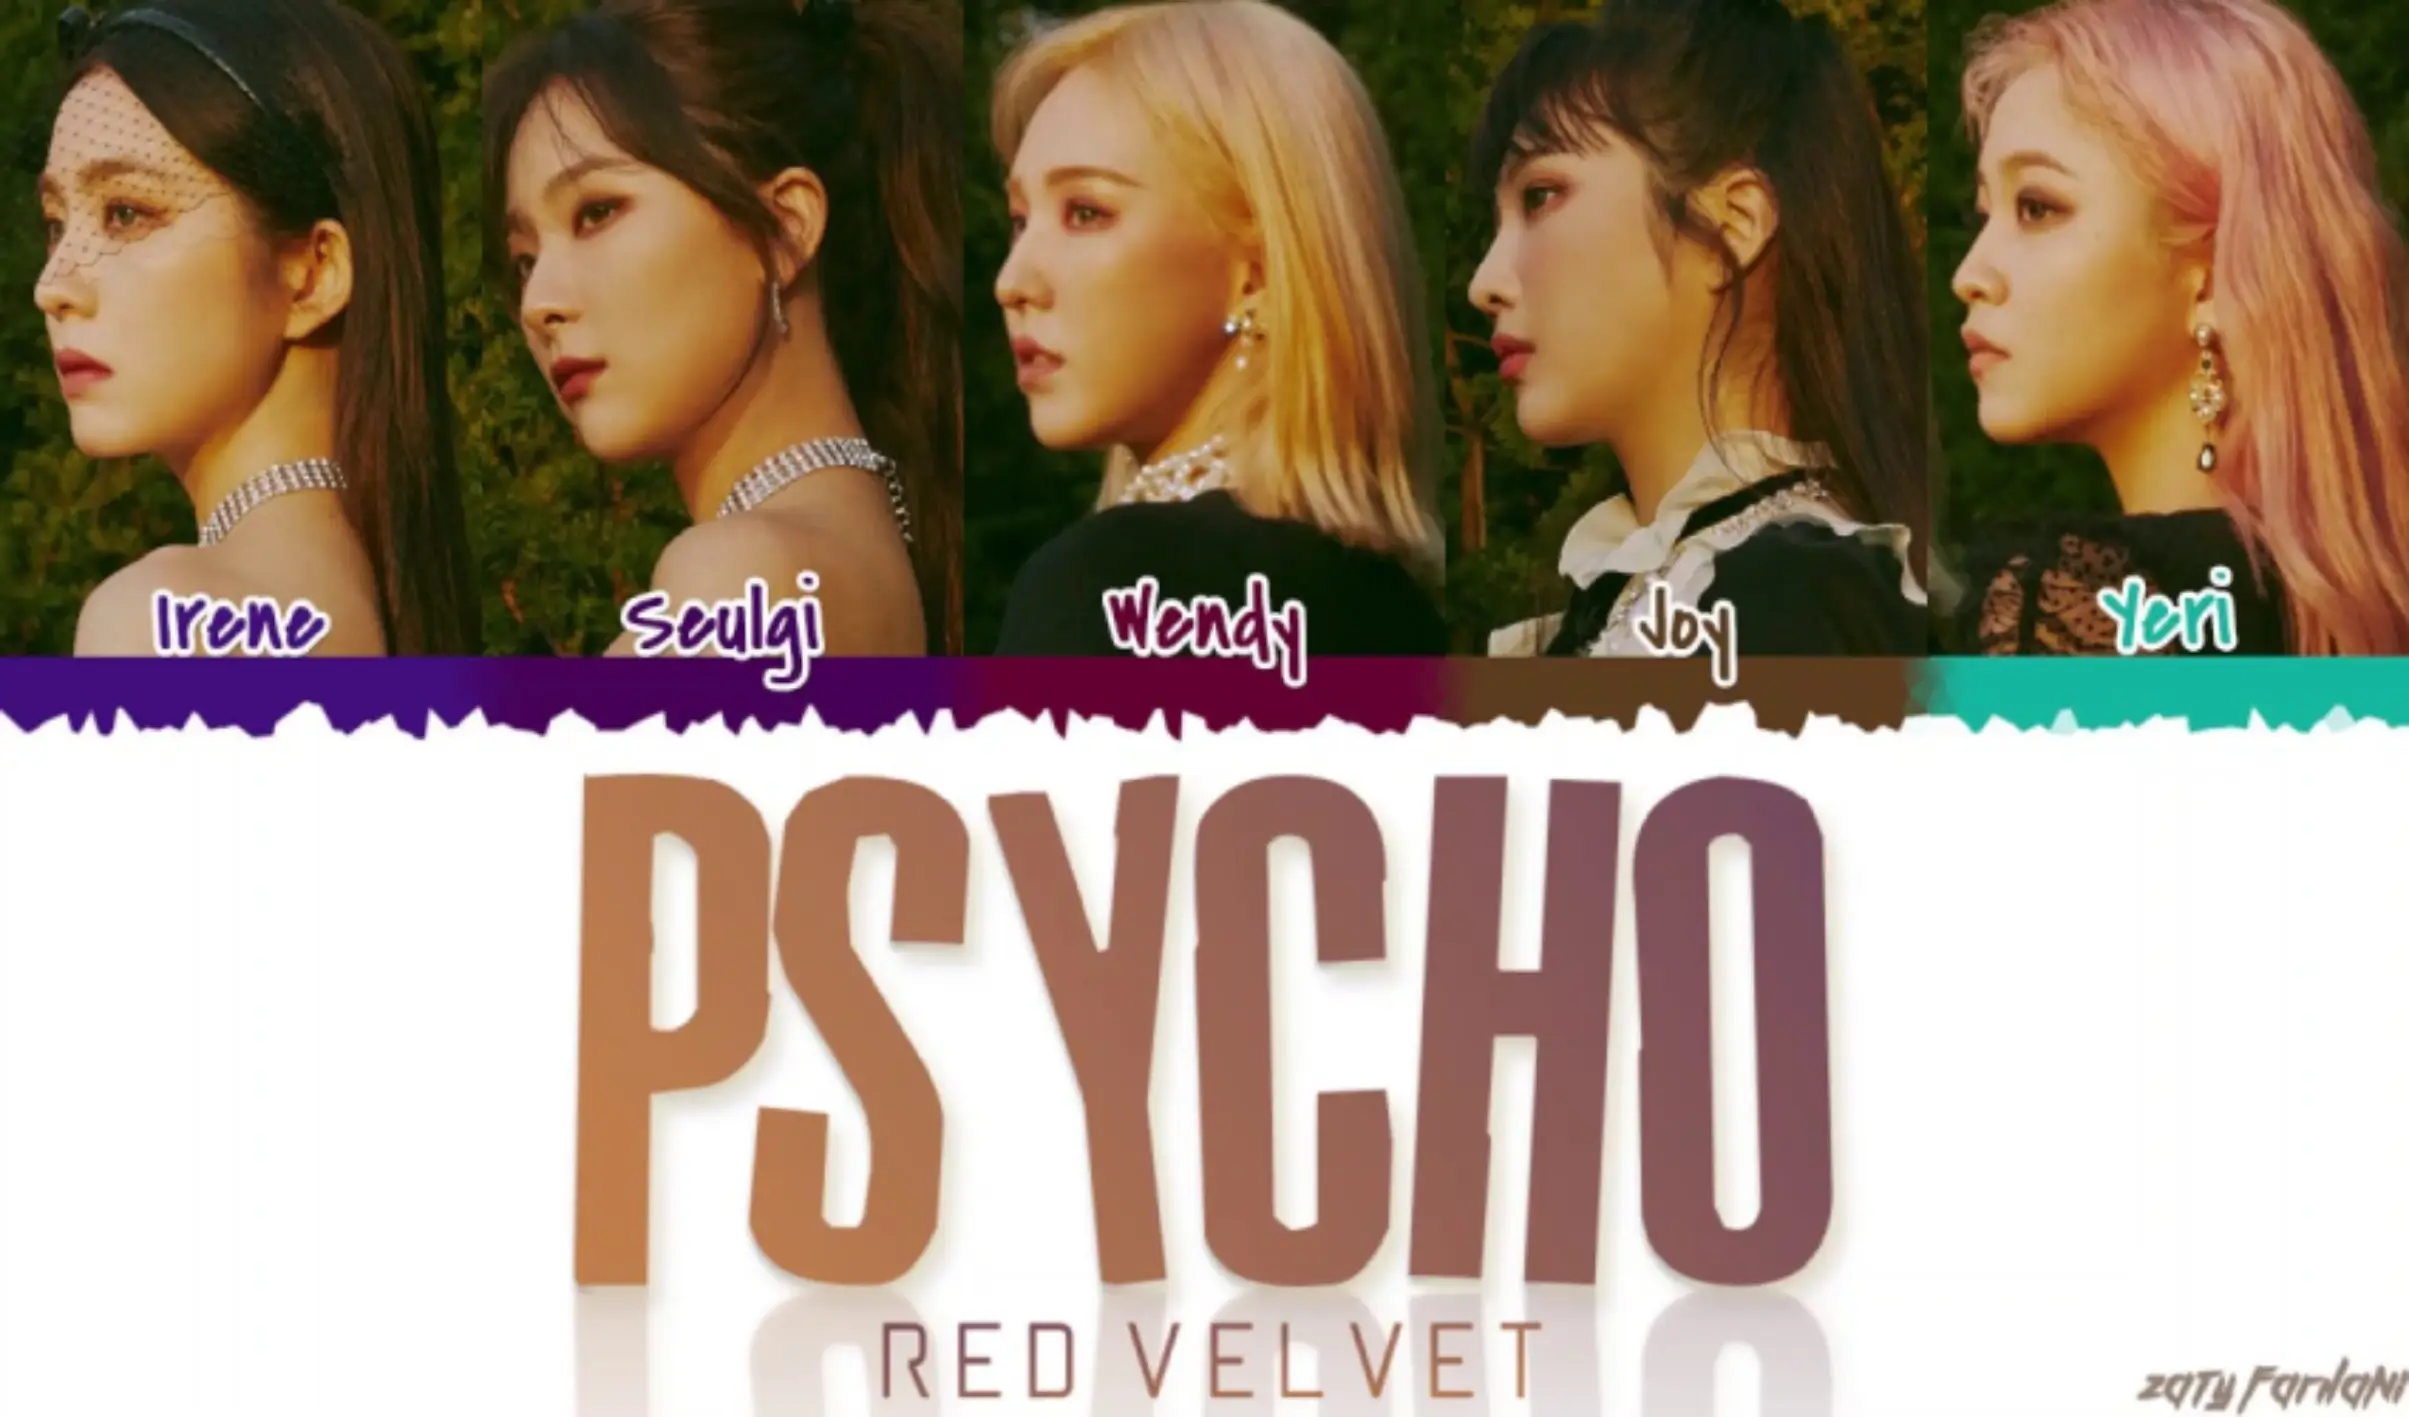 Psycho” by Red Velvet“ music